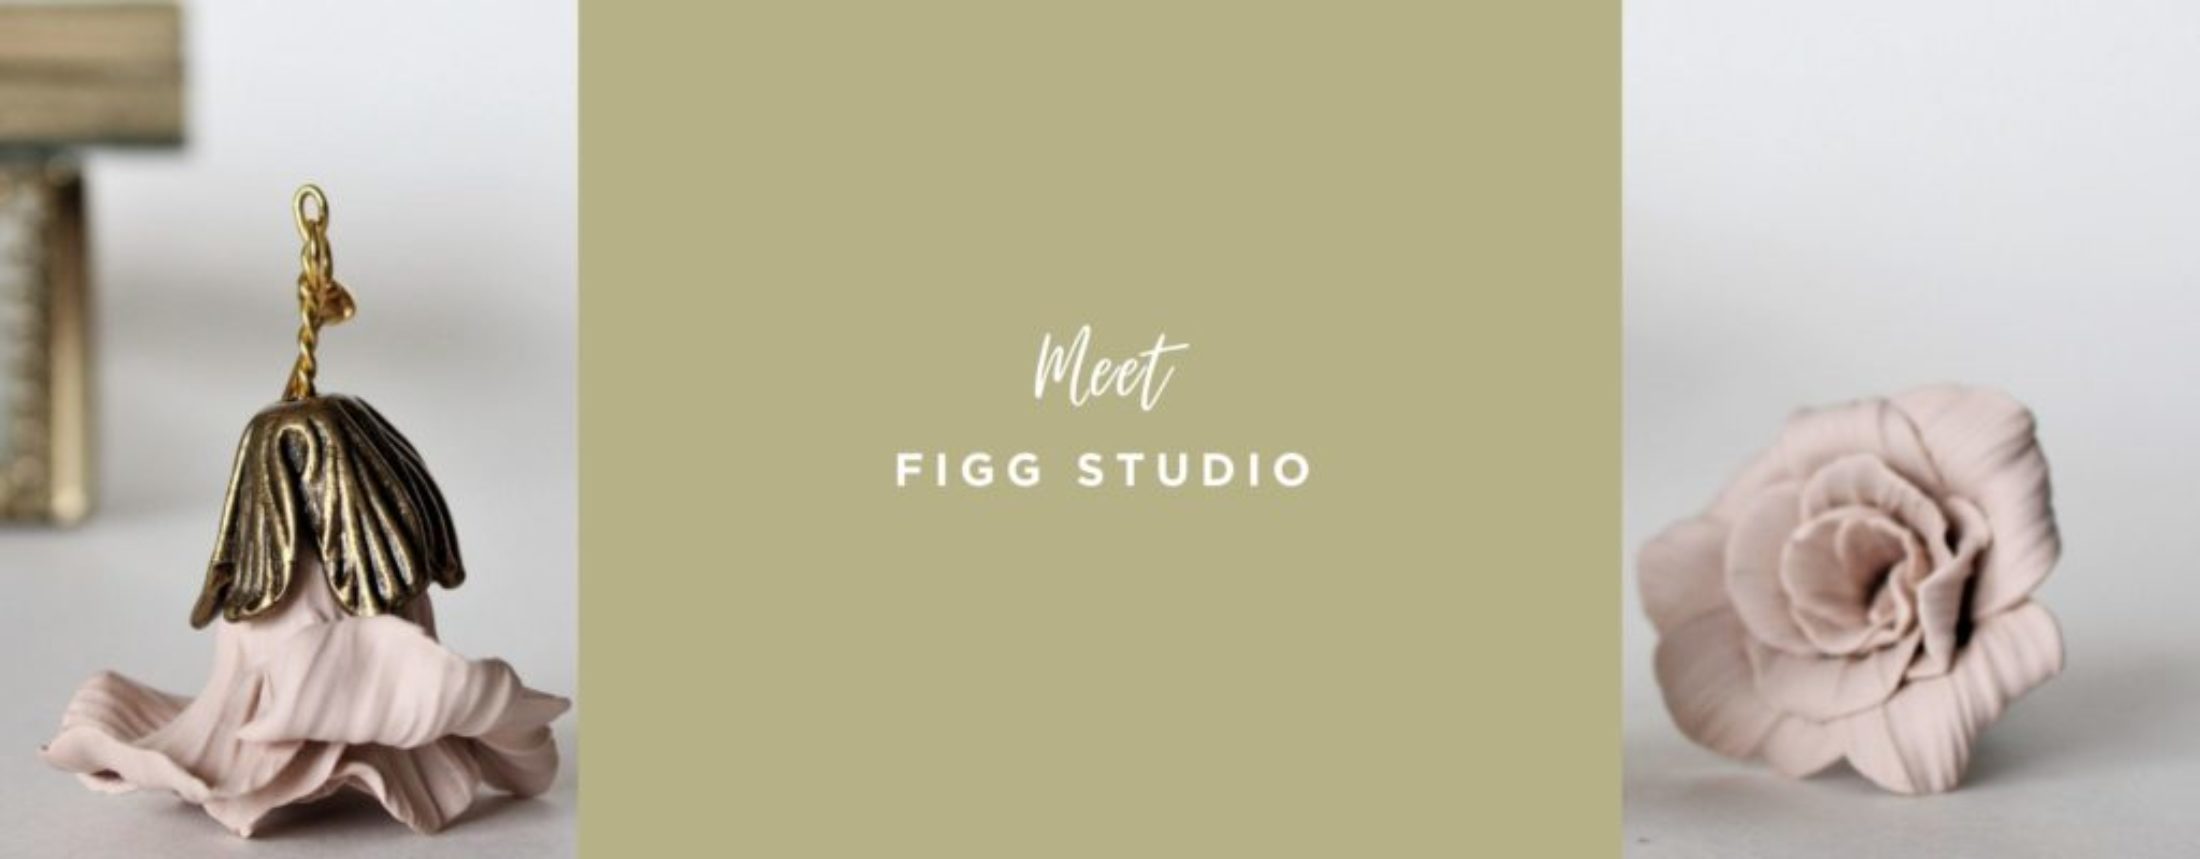 Meet FIGG Studio